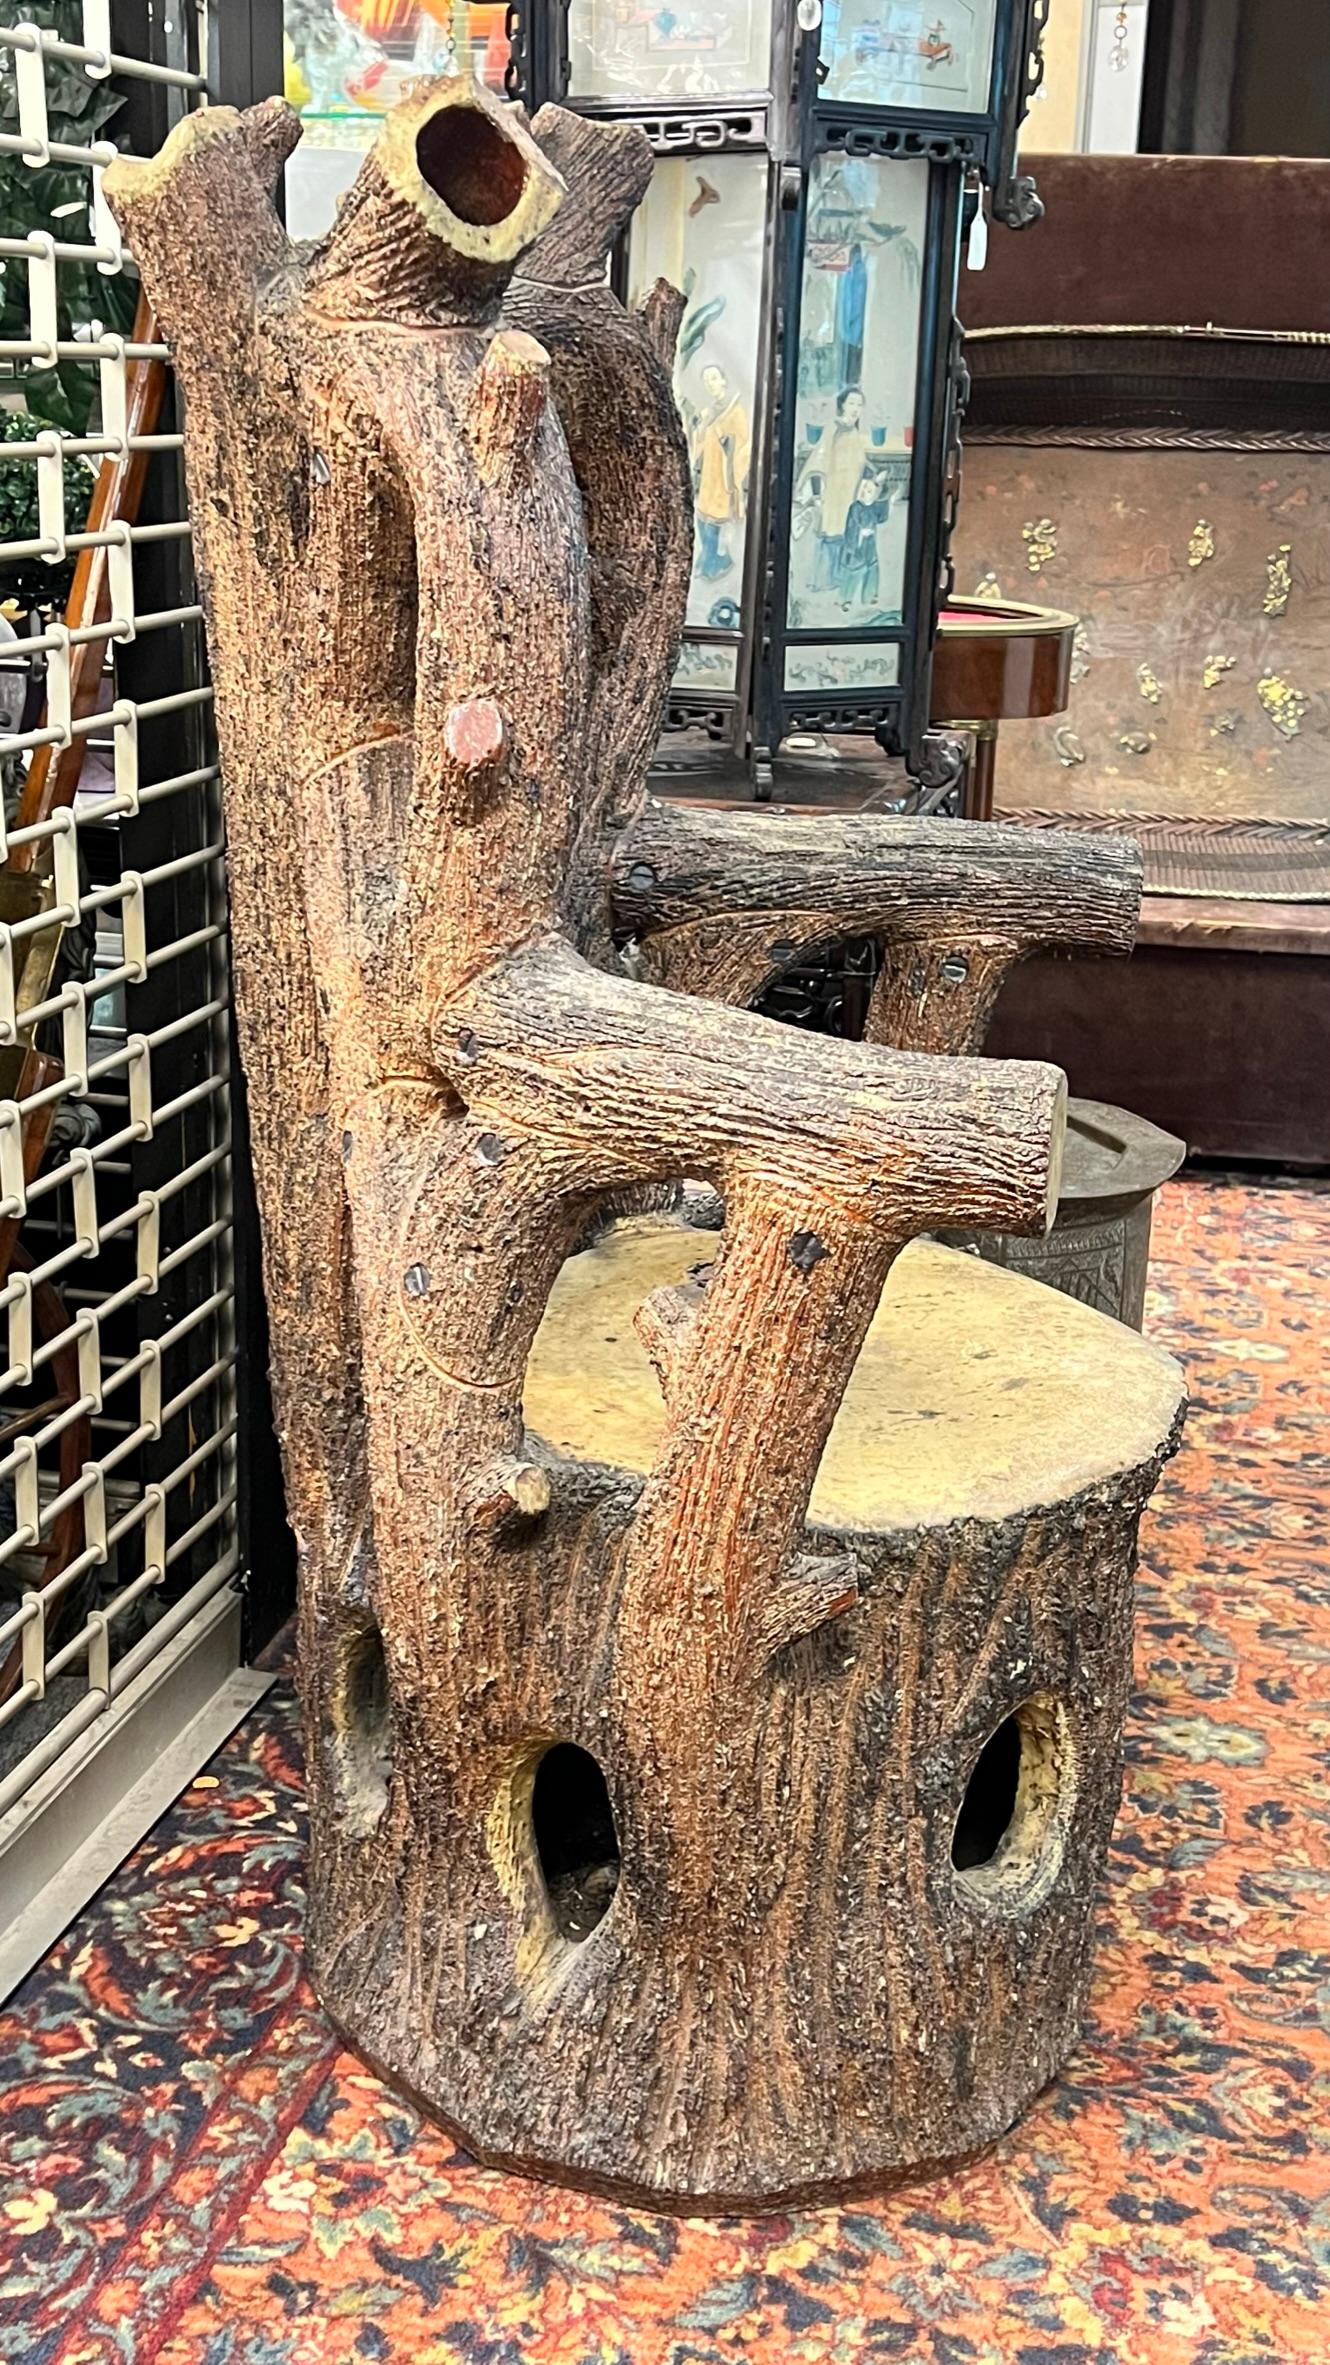 Unser Gartenstuhl aus Holzimitat in Form eines Baumstumpfs mit montierten Armlehnen und Rückenlehne stammt aus den 1870er Jahren und wird Mintons of Staffordshire, England, zugeschrieben.  In gutem Zustand.  Außergewöhnlich selten.